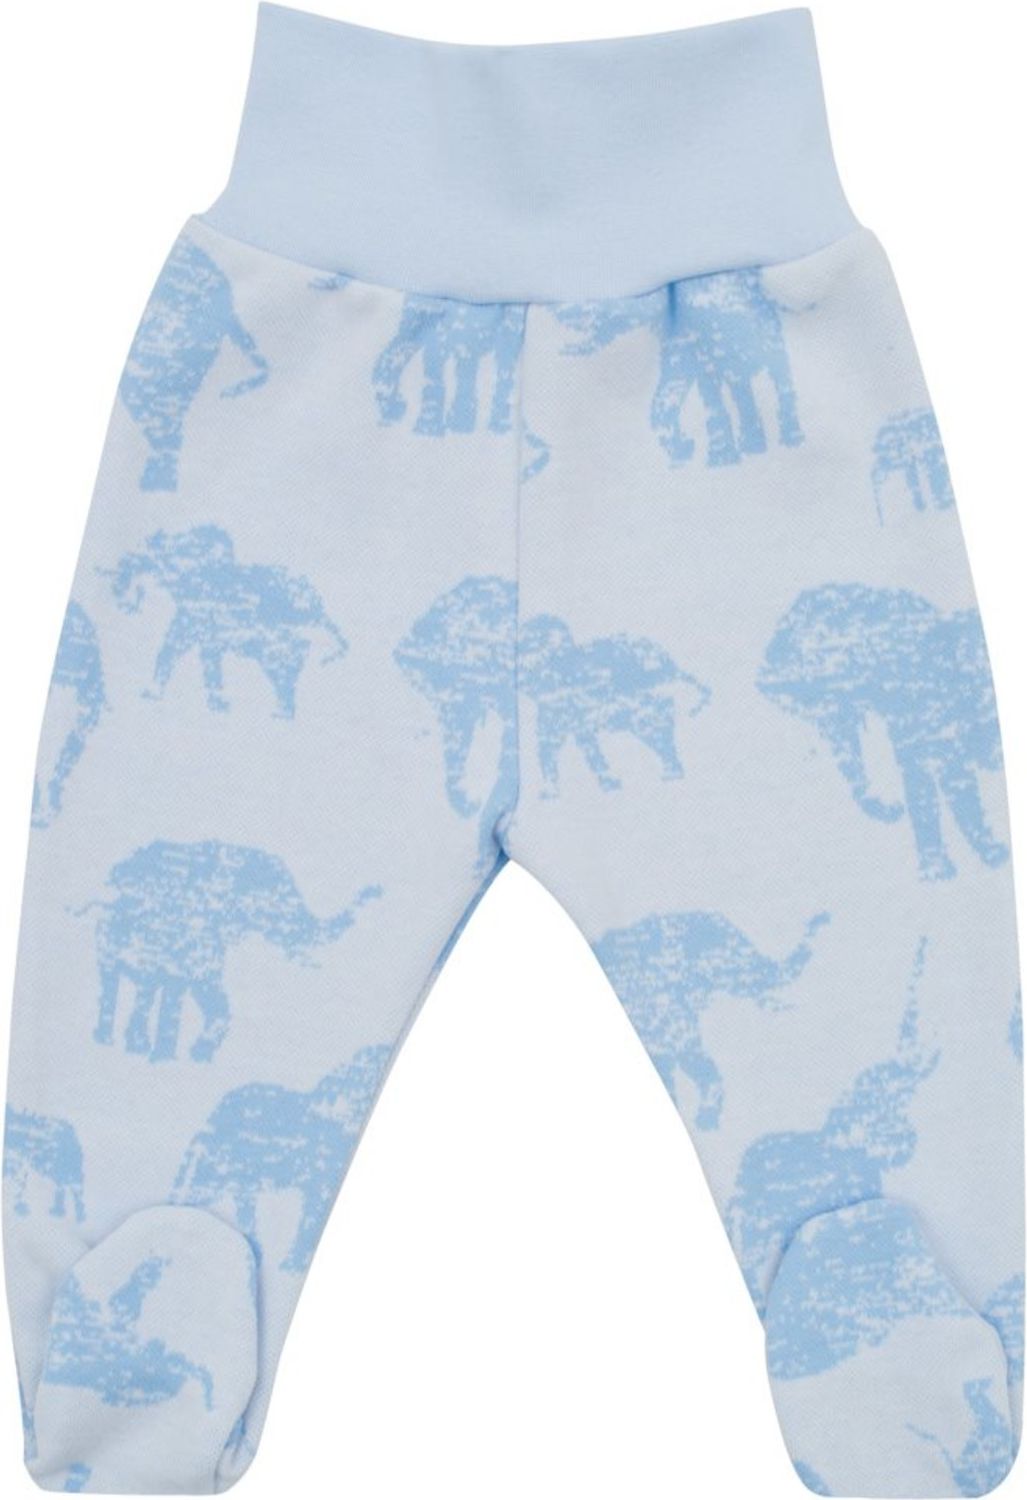 Zimní kojenecké polodupačky Baby Service Sloni modré - Zimní kojenecké polodupačky Baby Service Sloni modré - obrázek 1